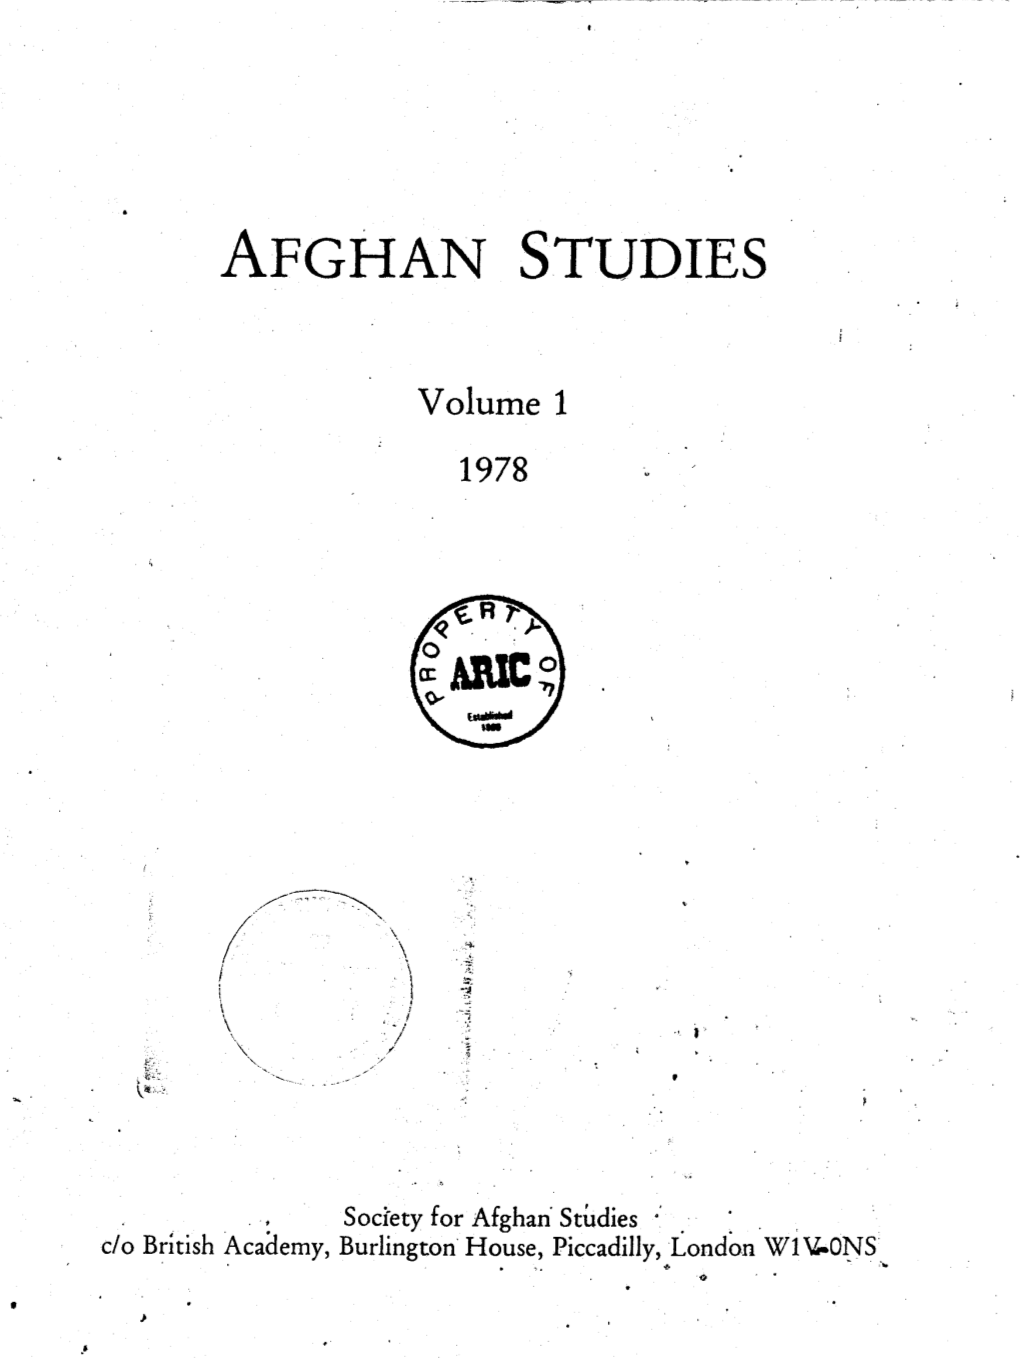 Afghan Studies